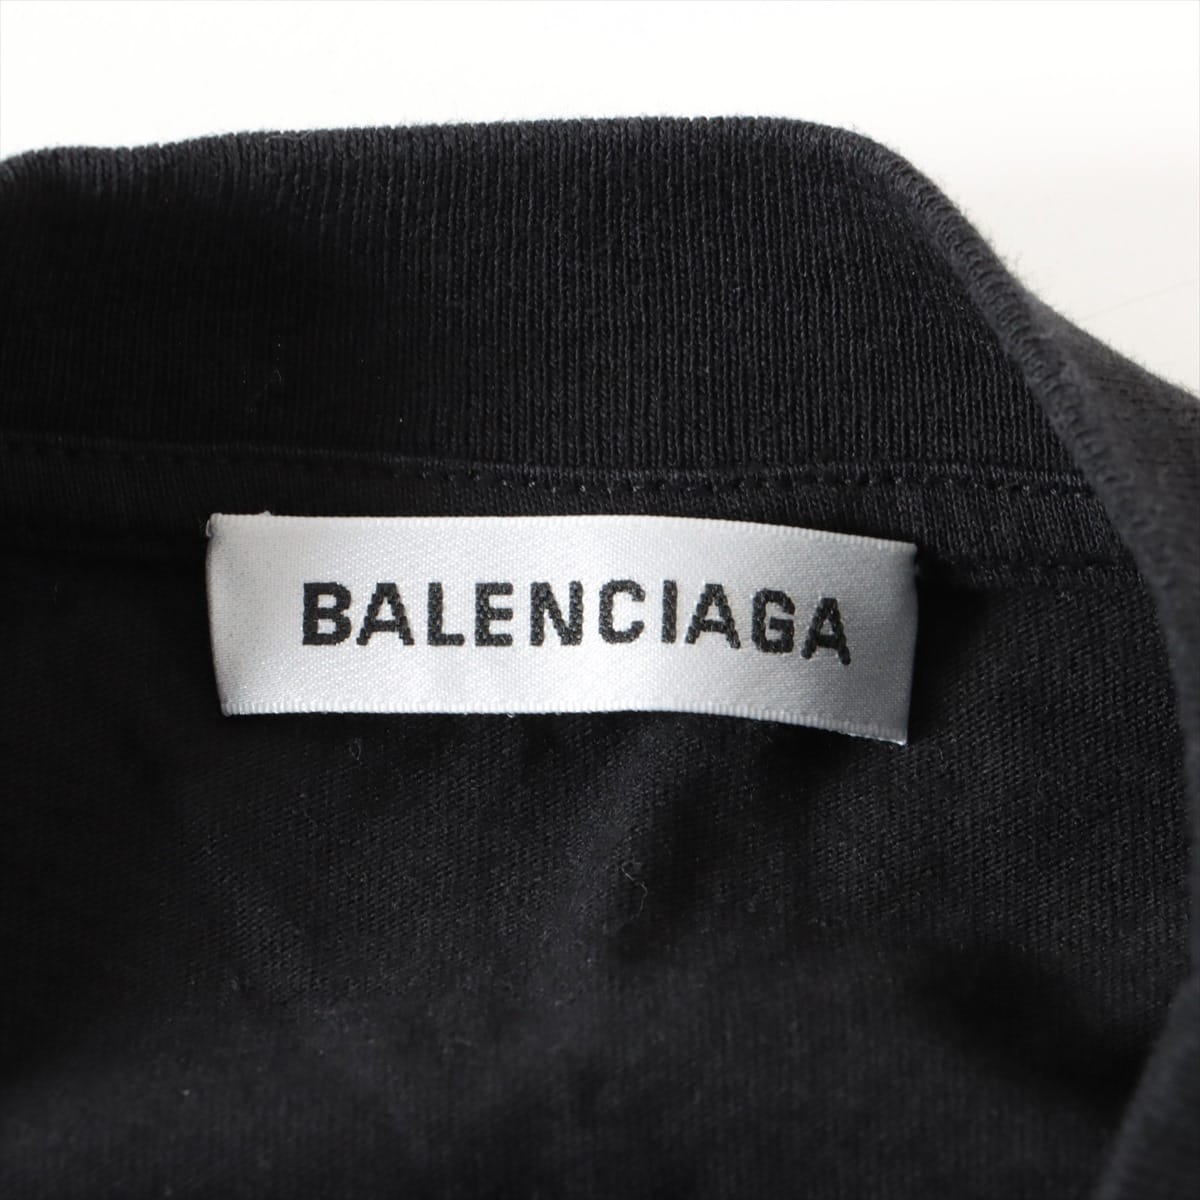 バレンシアガ 19SS コットン Tシャツ XS メンズ ブラック 556089 スピードハンター